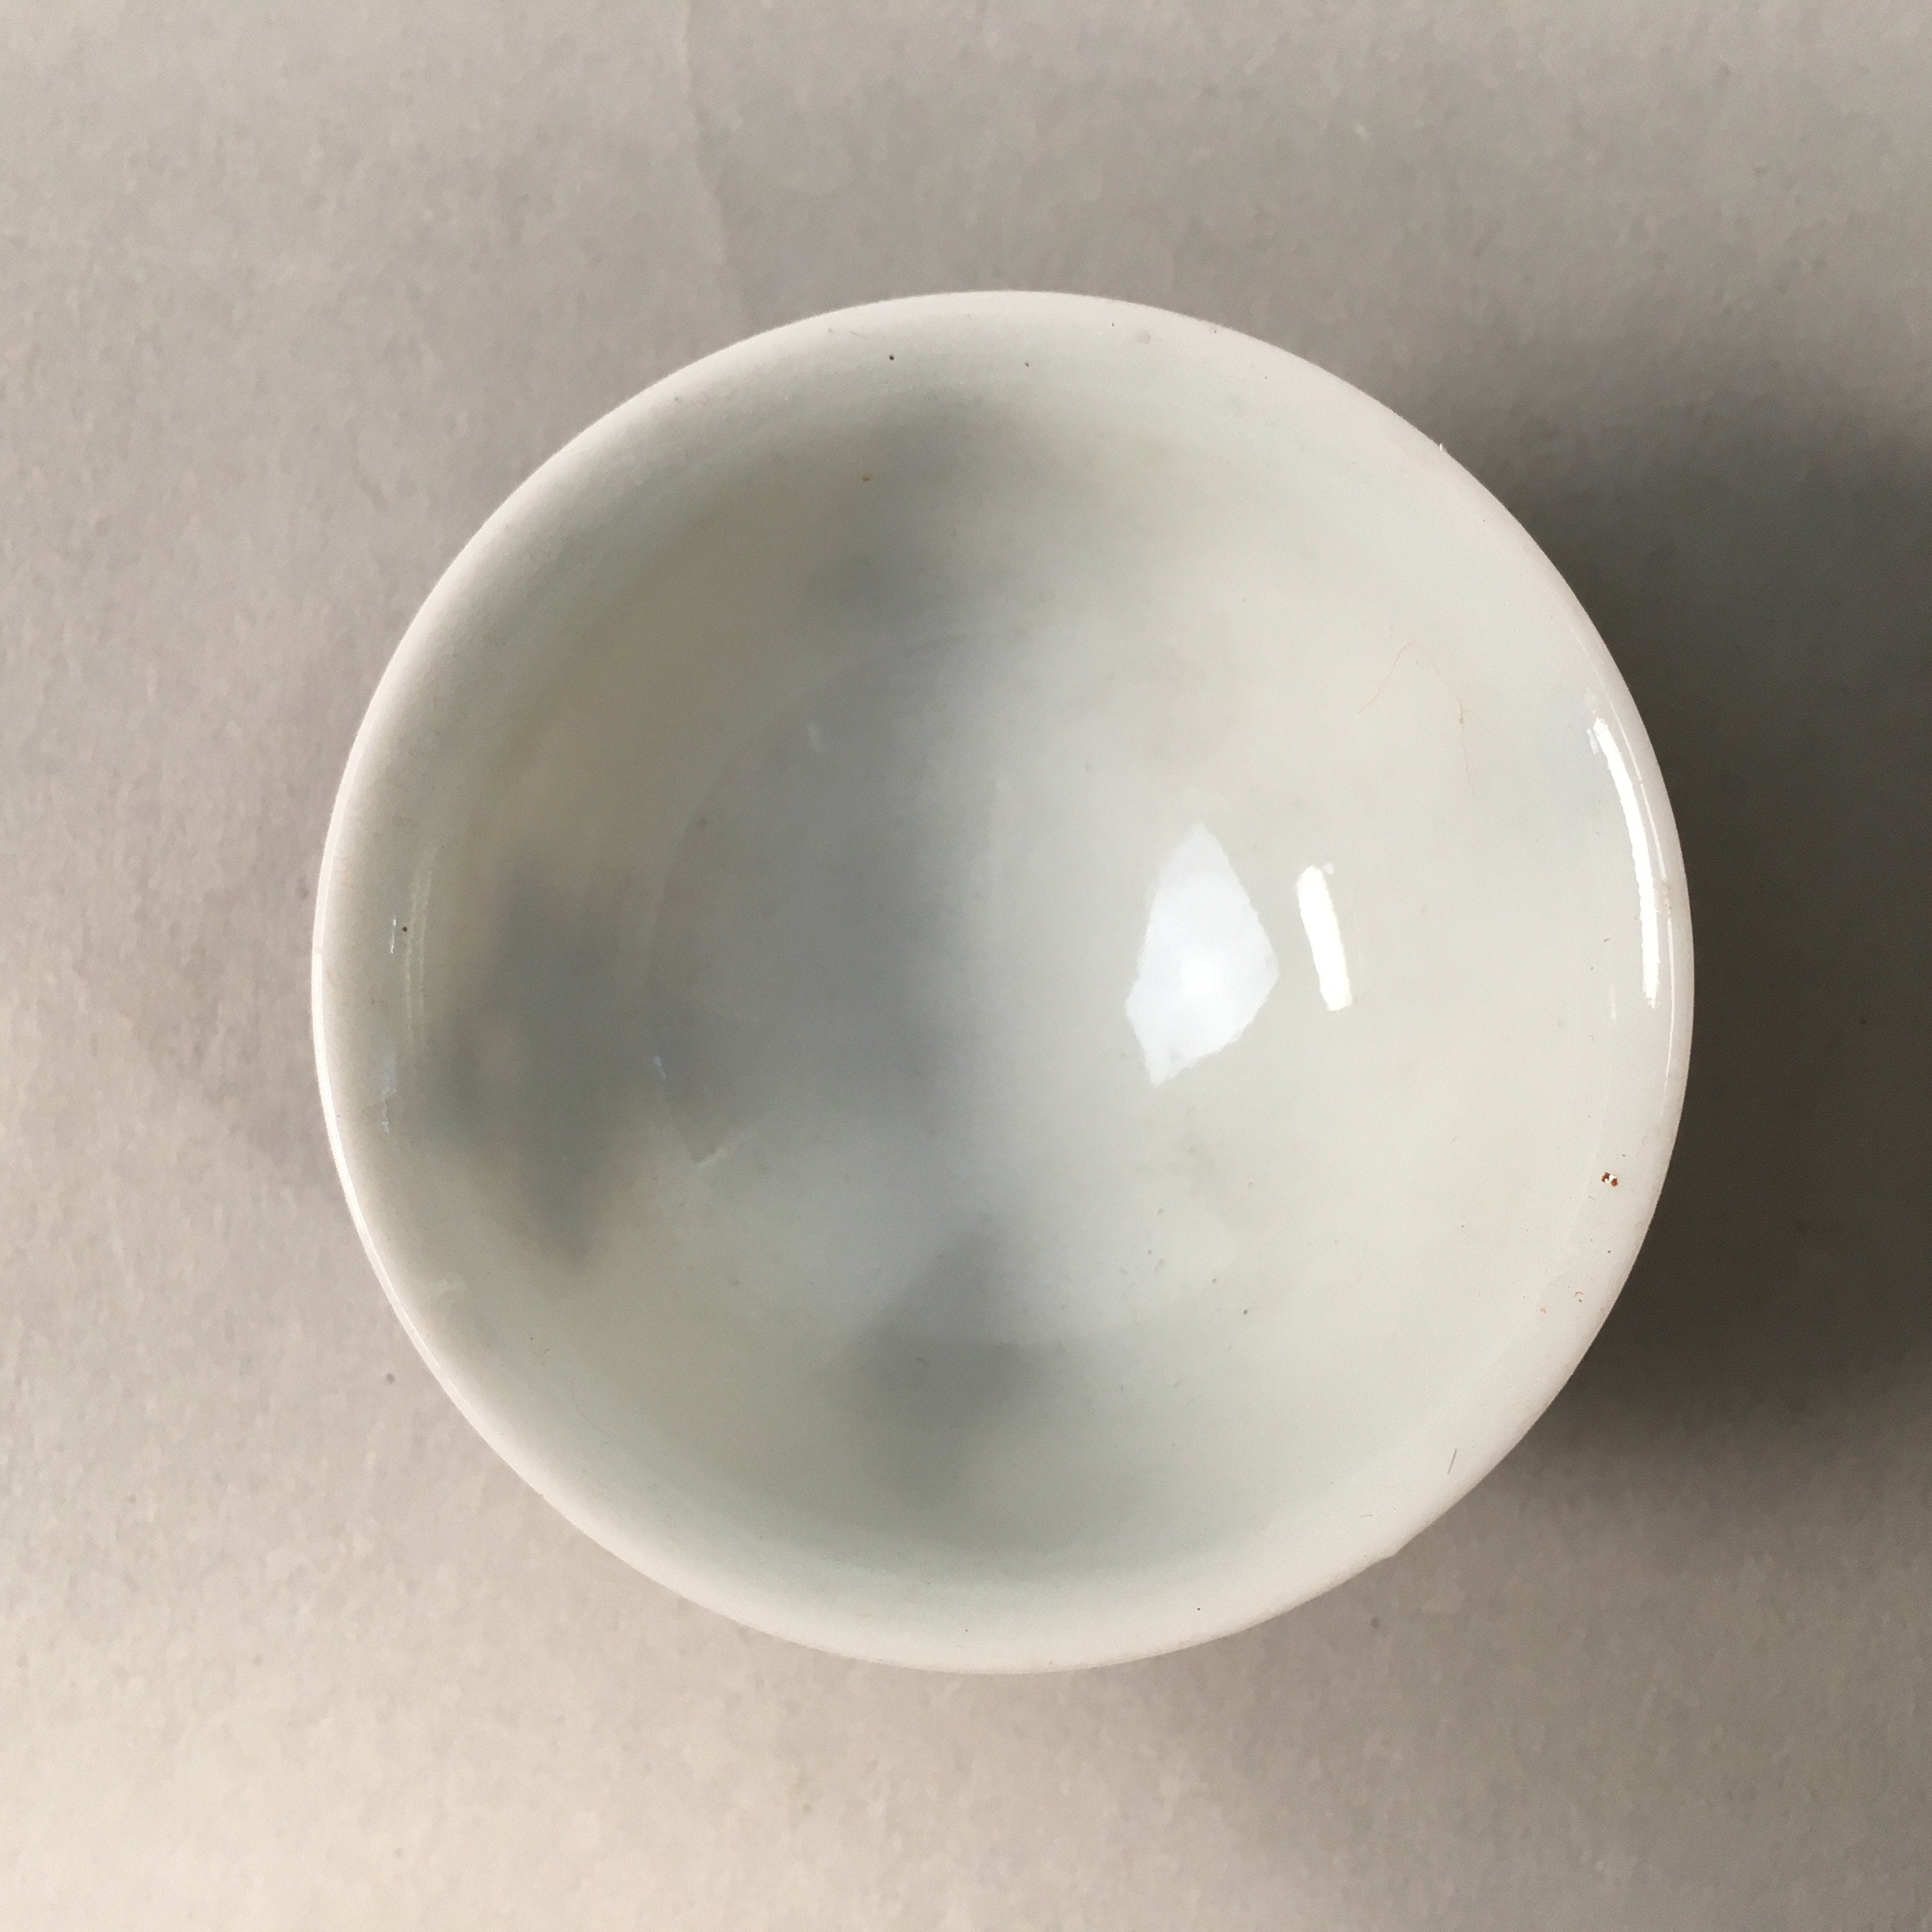 Japanese Porcelain Sake Cup Guinomi Sakazuki Vtg Kanji White Brown Gold GU883